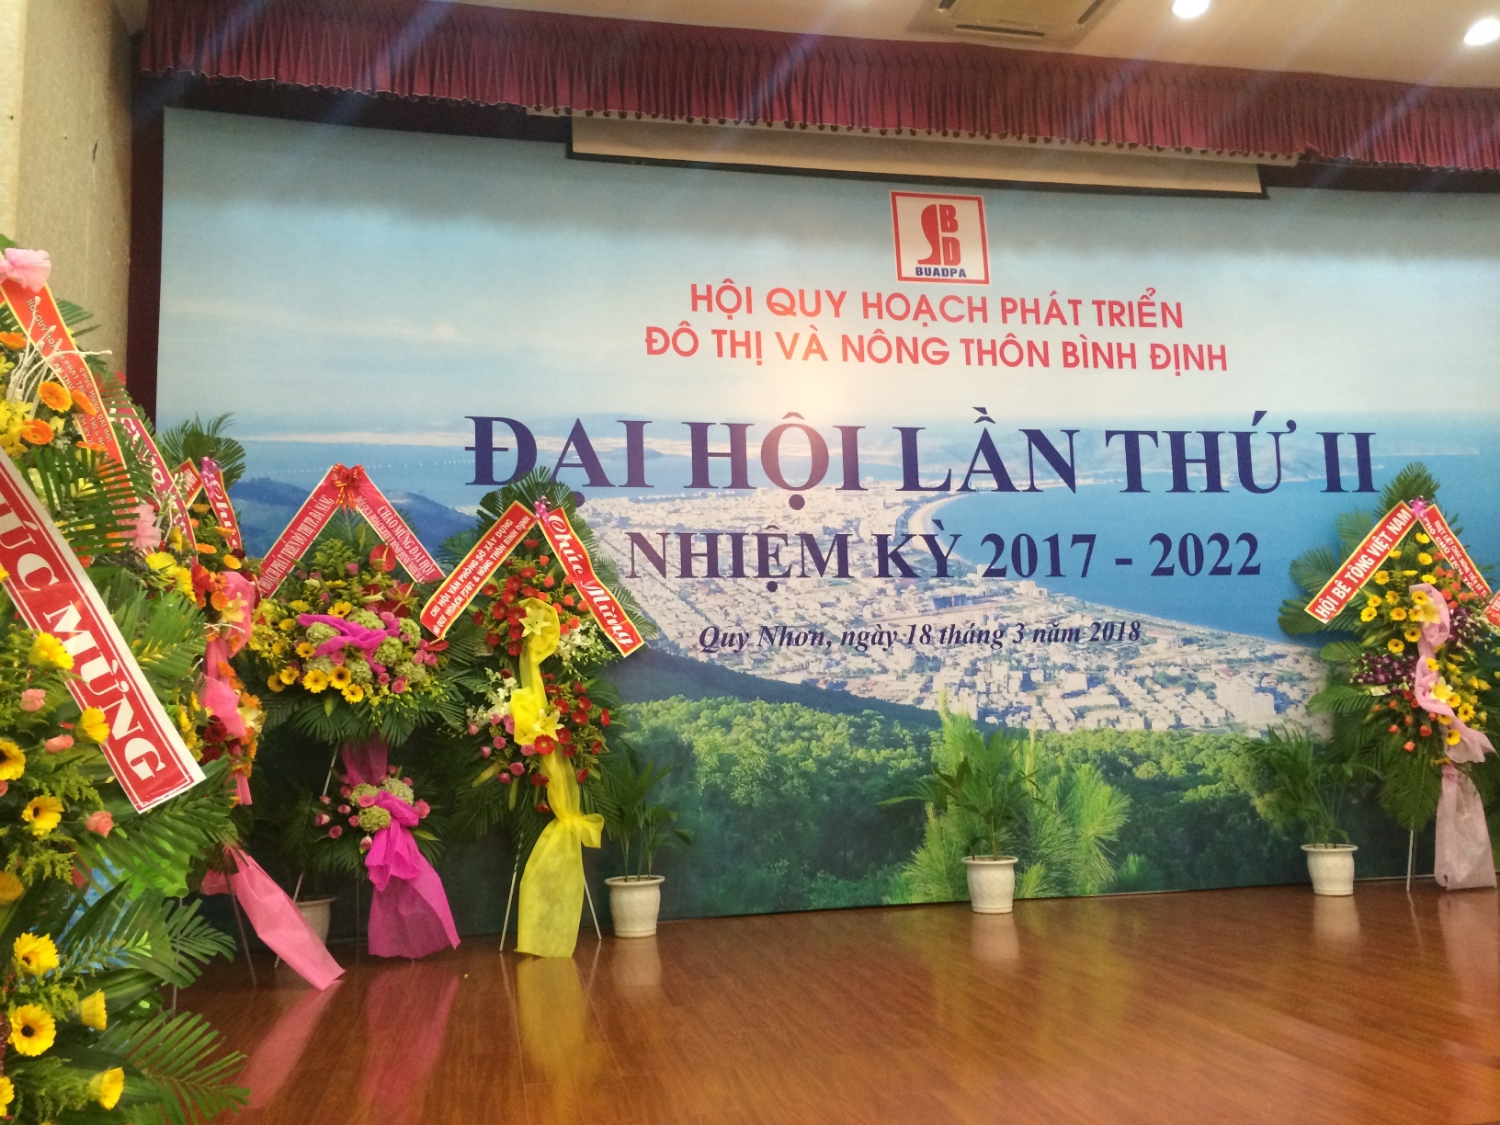 Đại hội Hội Quy hoạch phát triển đô thị và nông thôn Bình Định